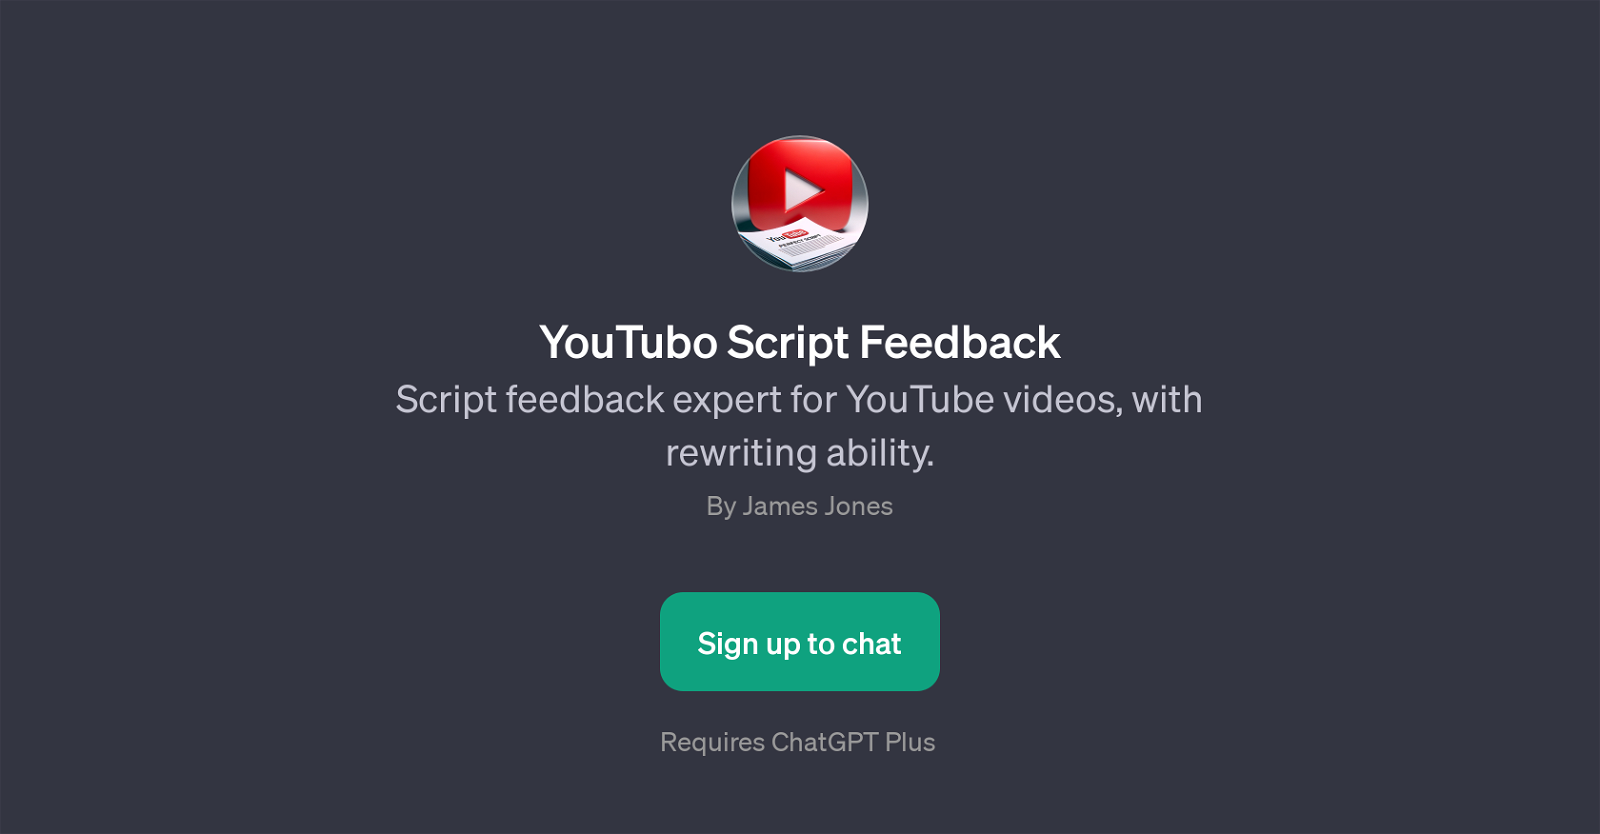 YouTubo Script Feedback website